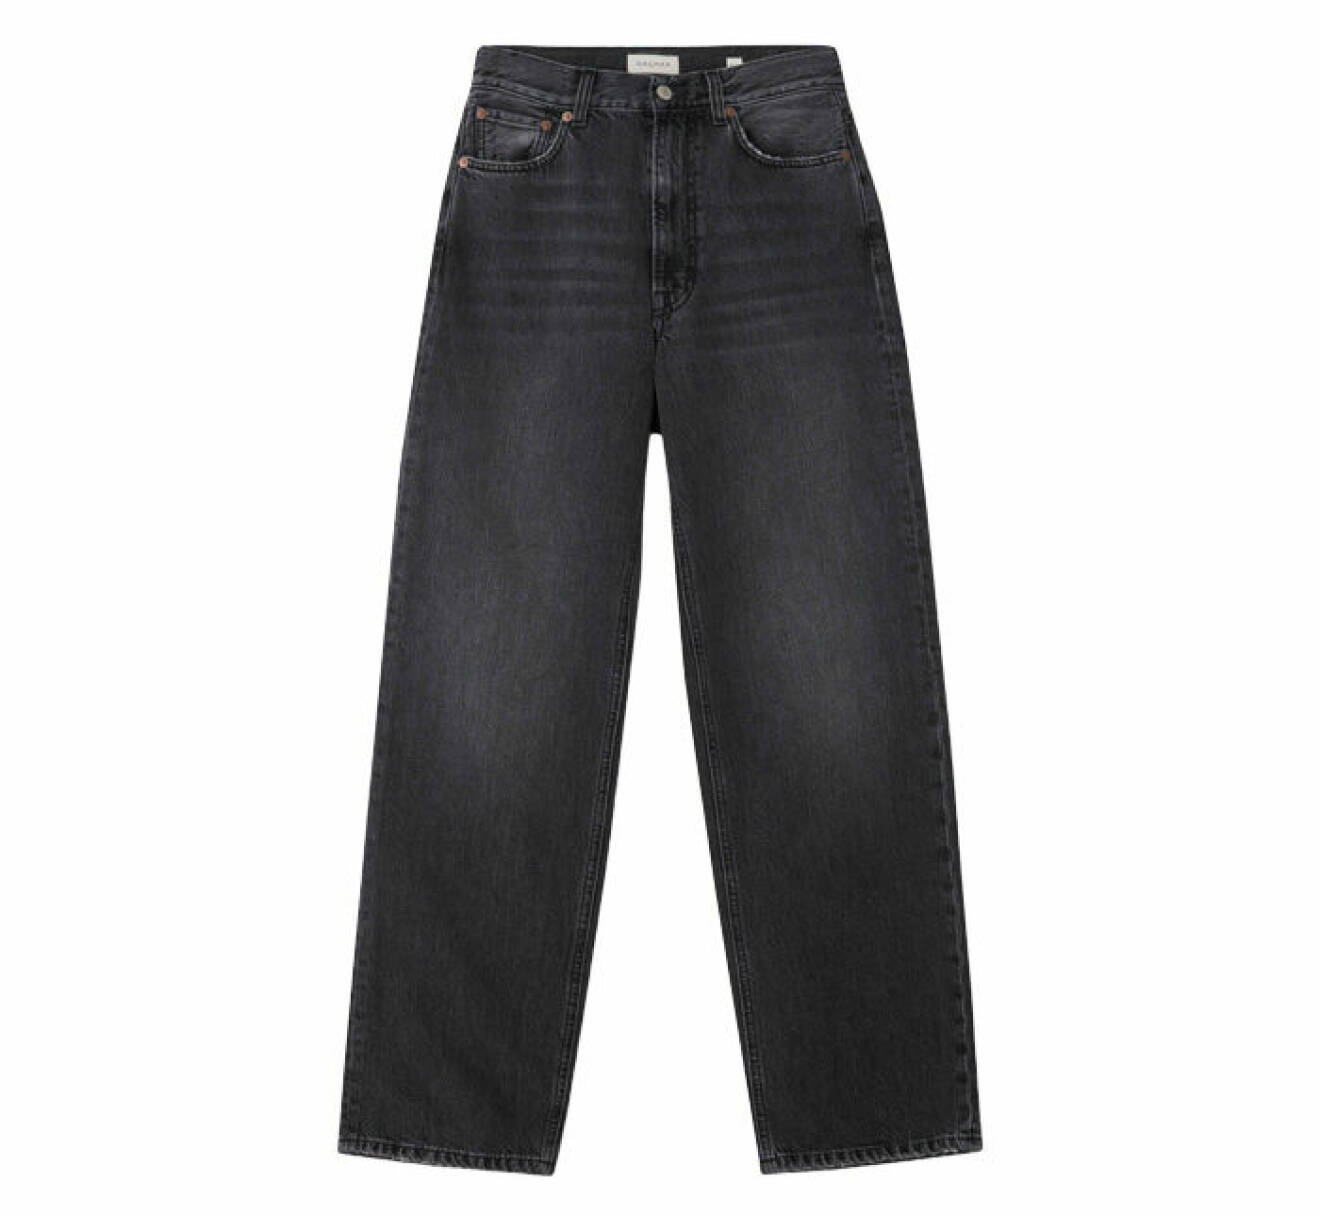 vida jeans i grå nyans med avslappnad passform från Dagmars jeanskollektion